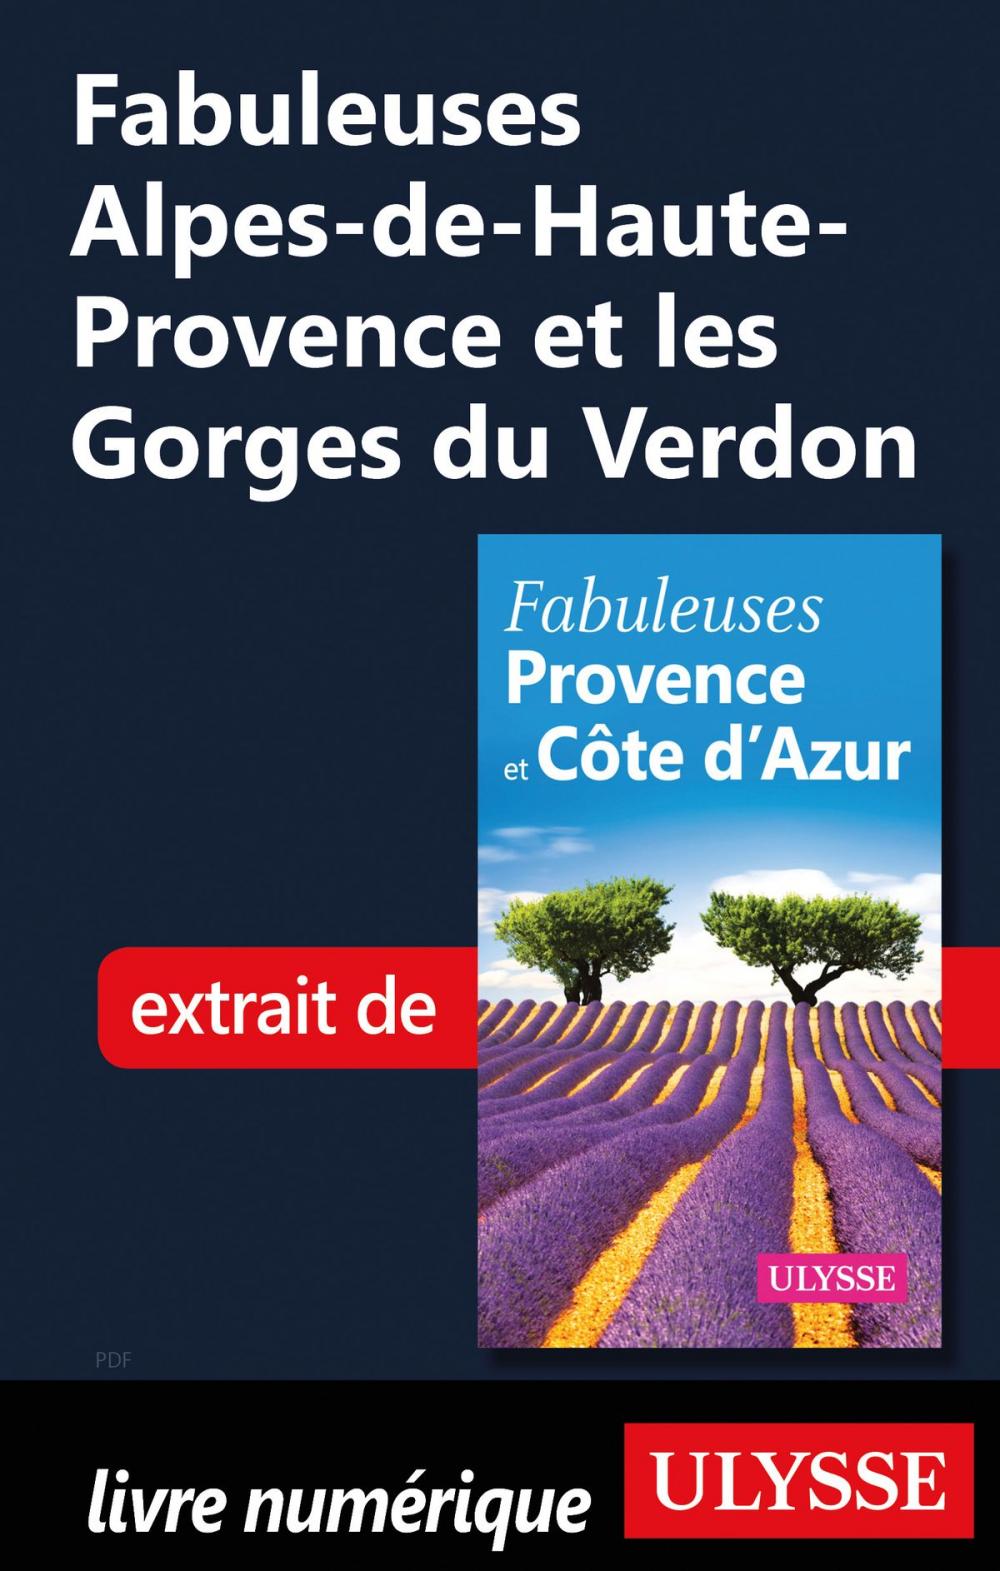 Big bigCover of Fabuleuses Alpes-de-Haute-Provence et les Gorges du Verdon